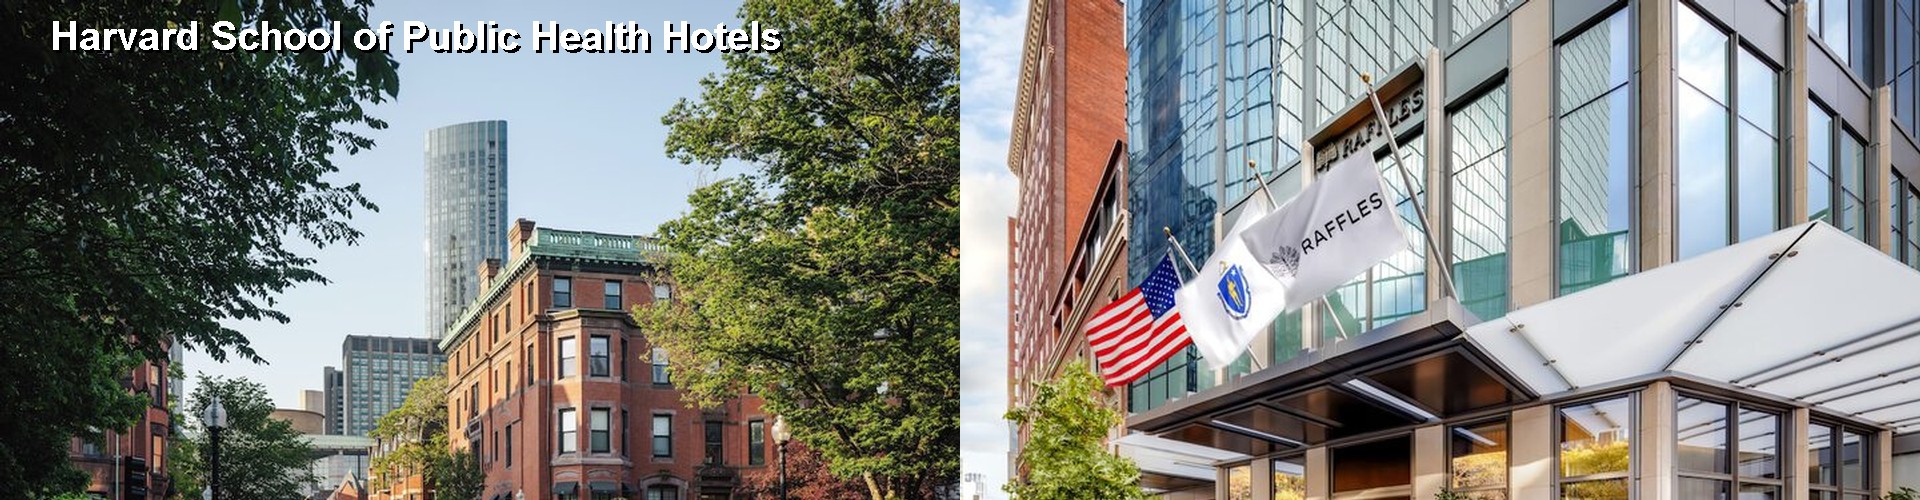 5 Best Hotels near Harvard School of Public Health